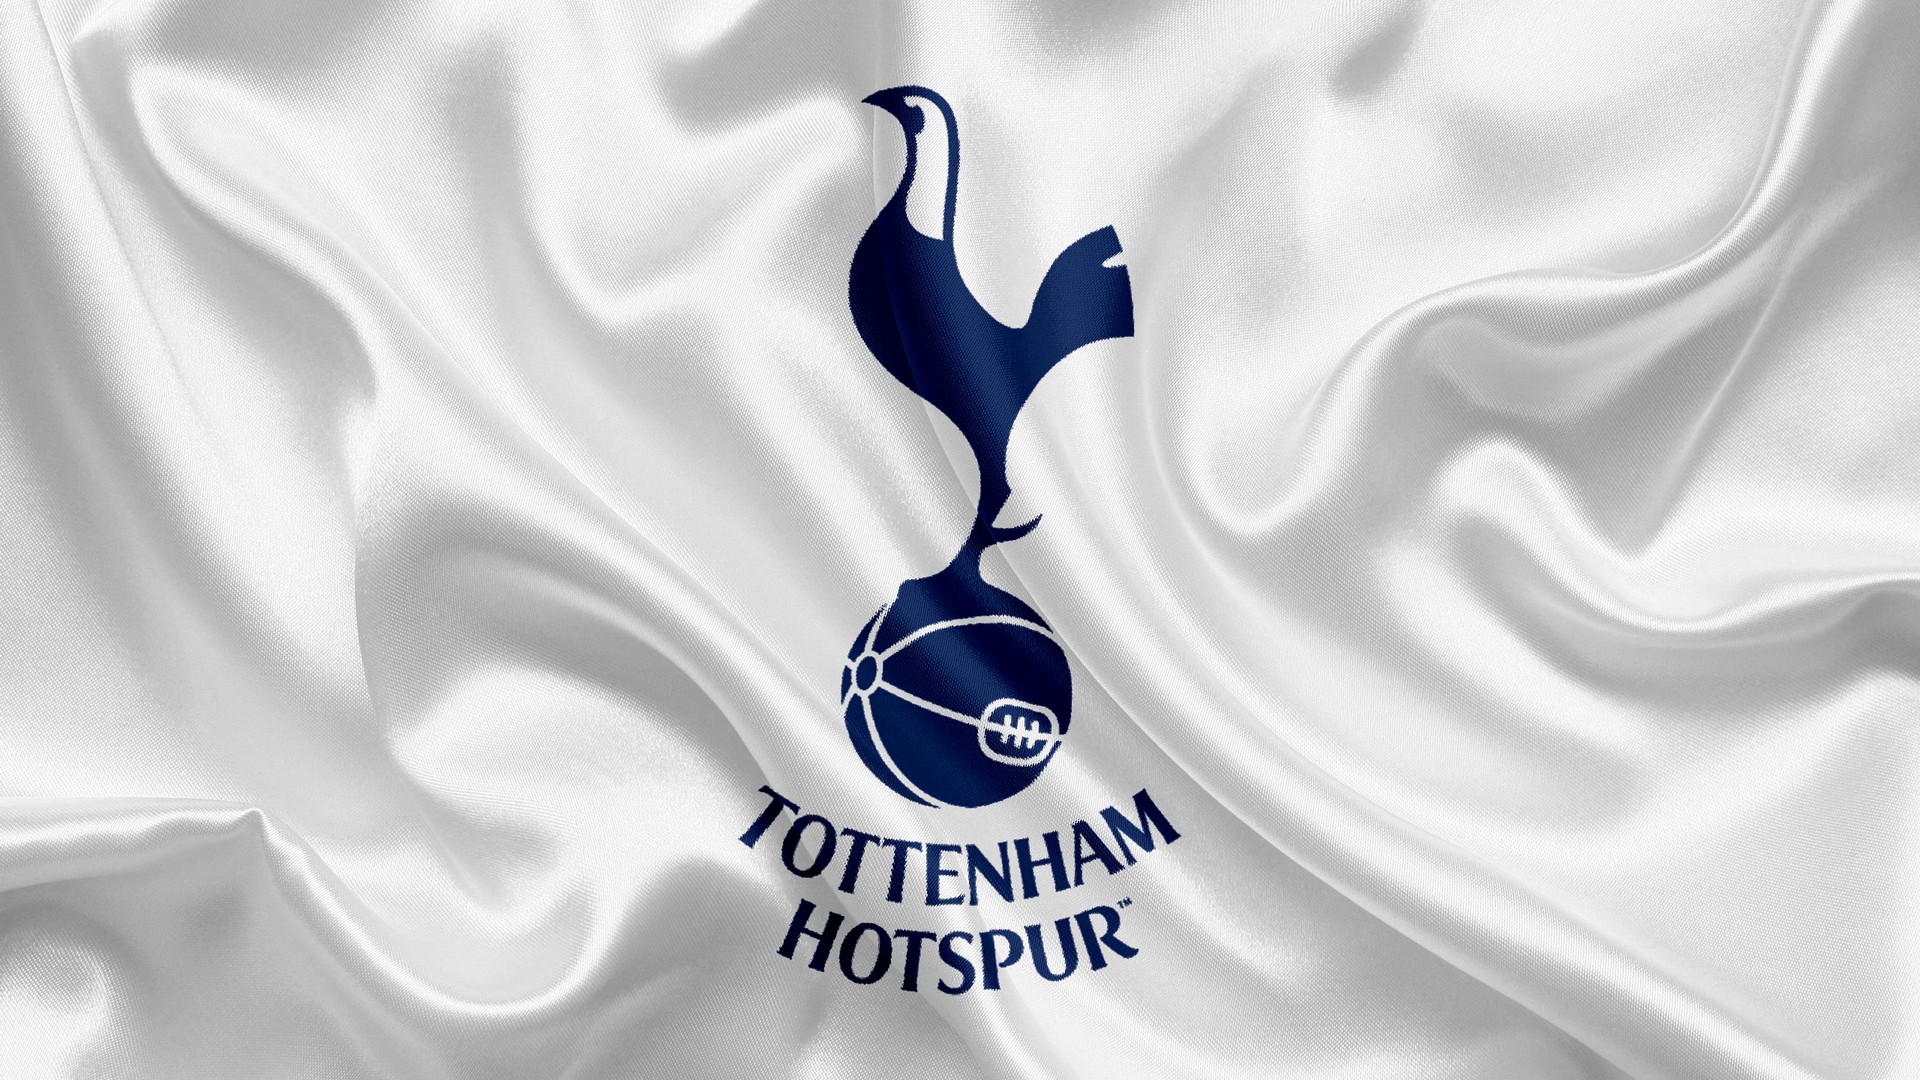 Tottenham Hotspur Wallpaper Football